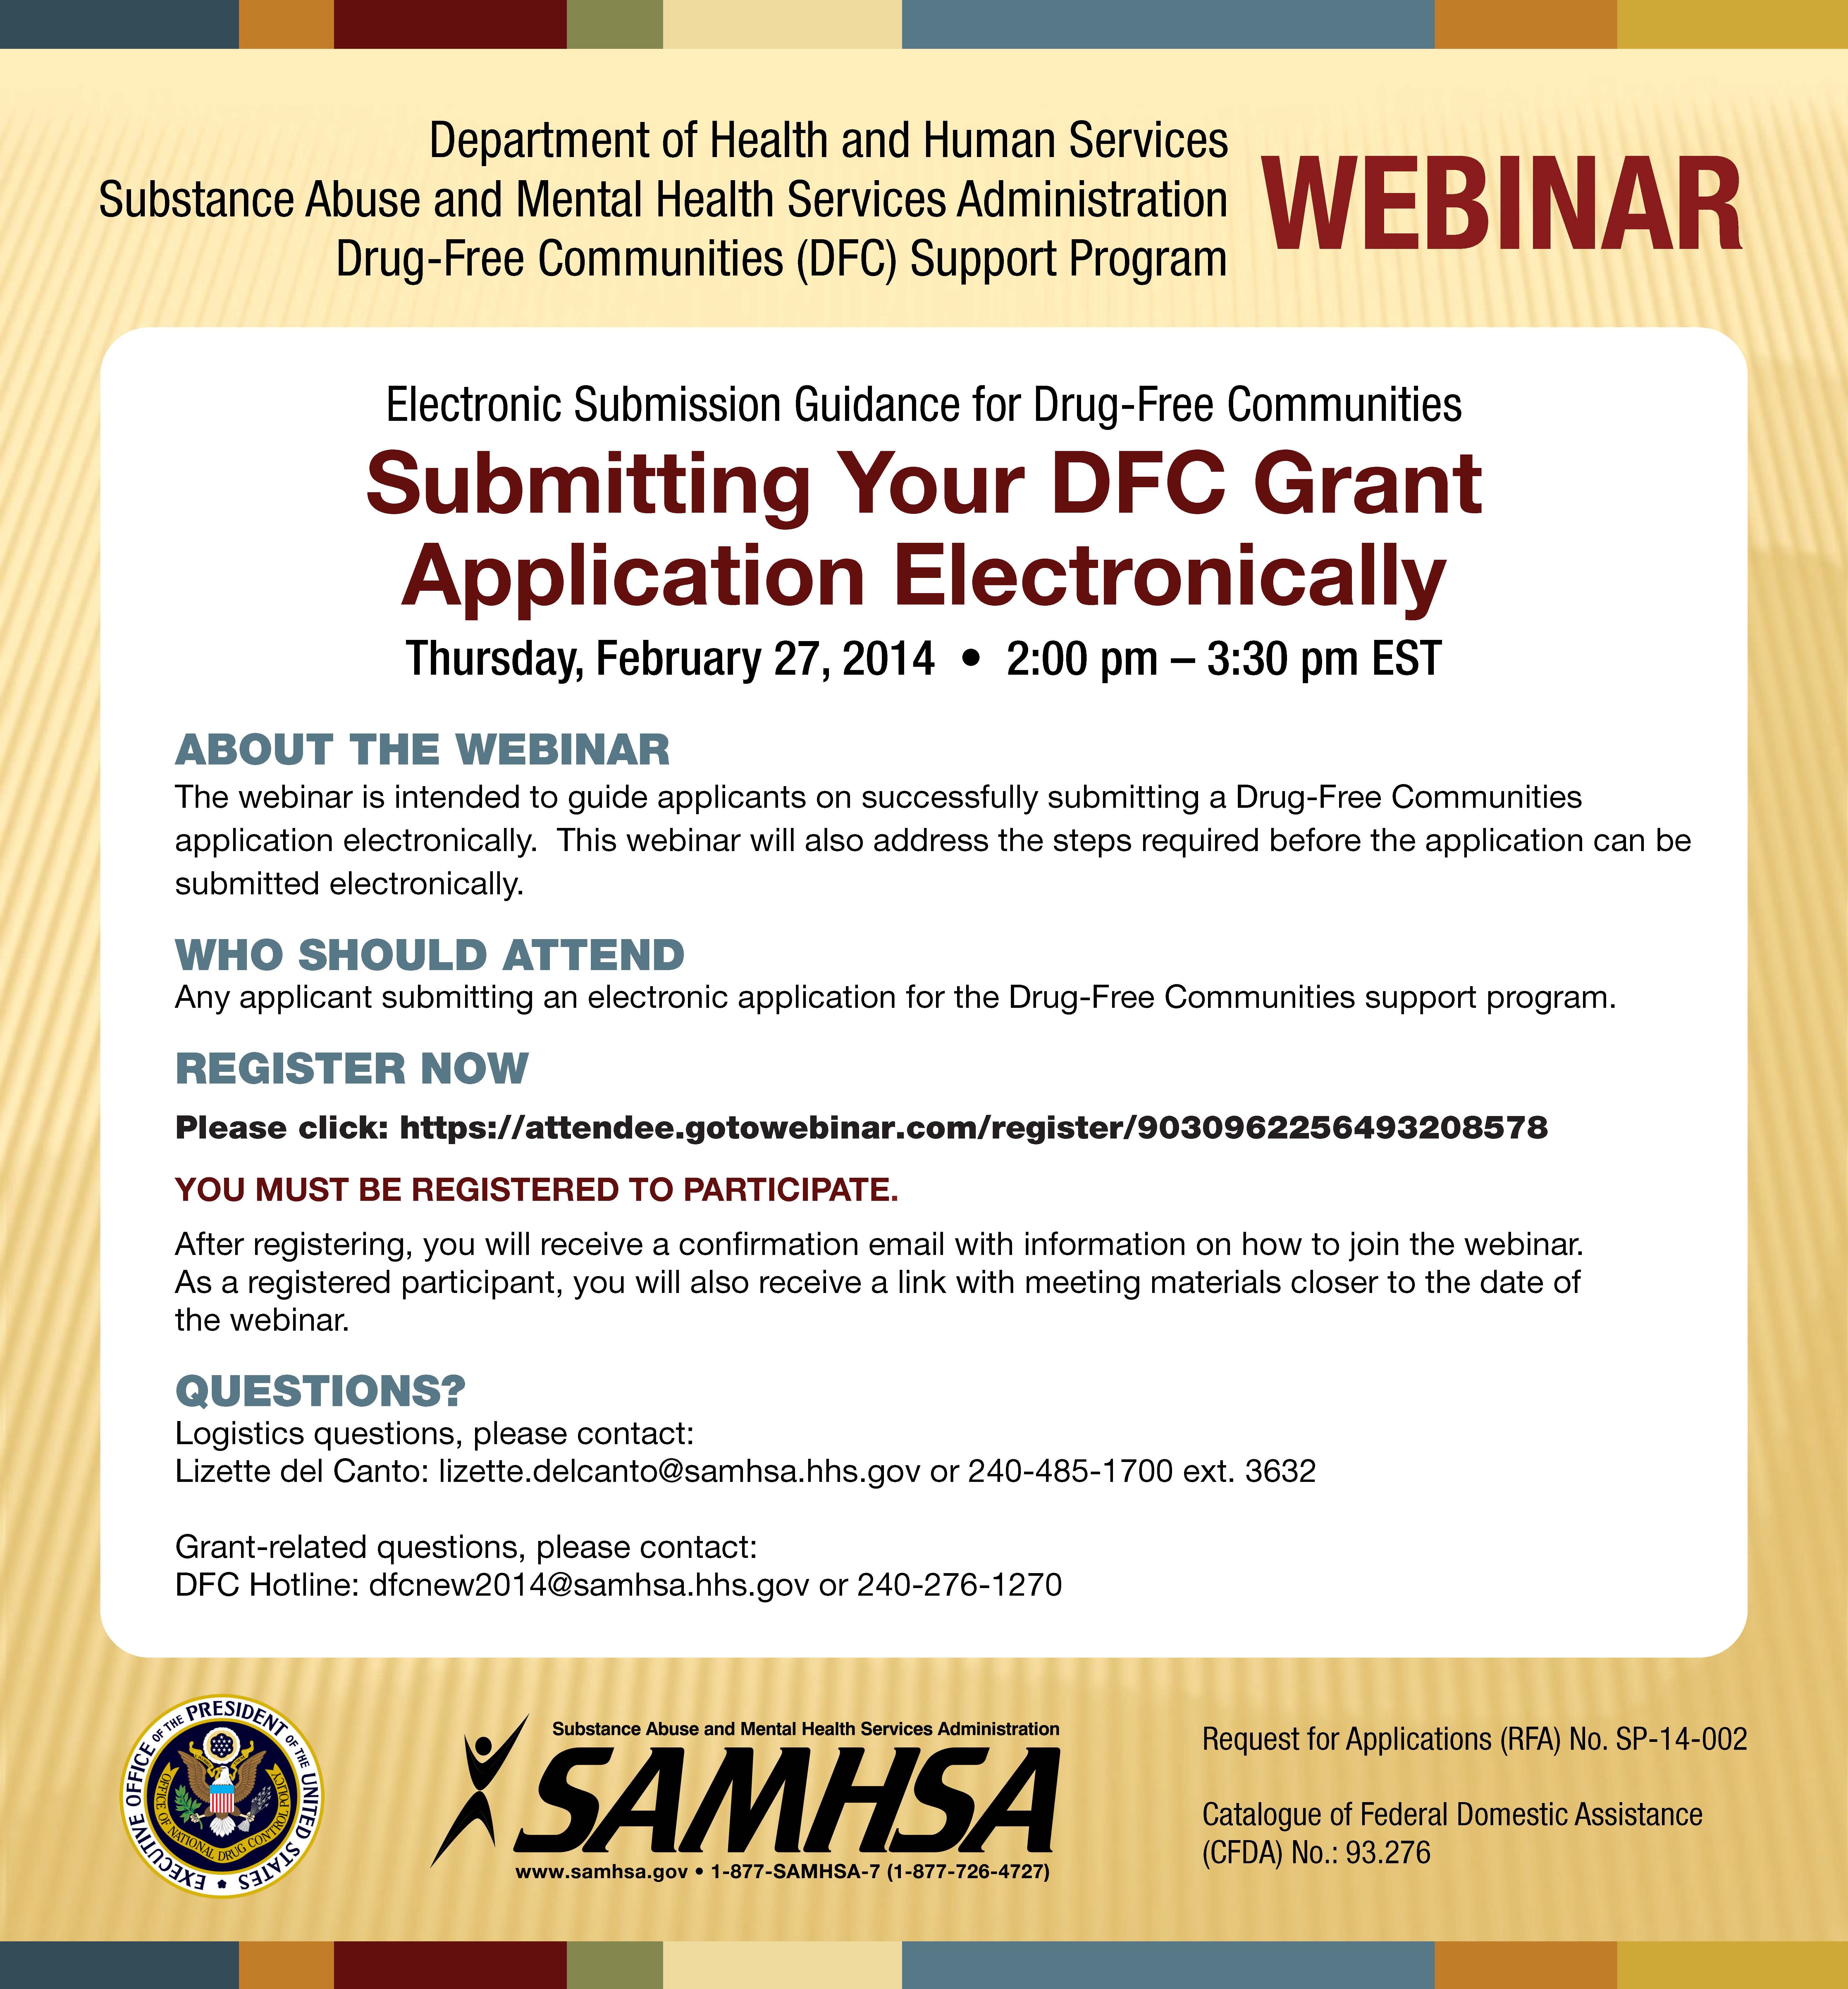 DFC grant application webinar